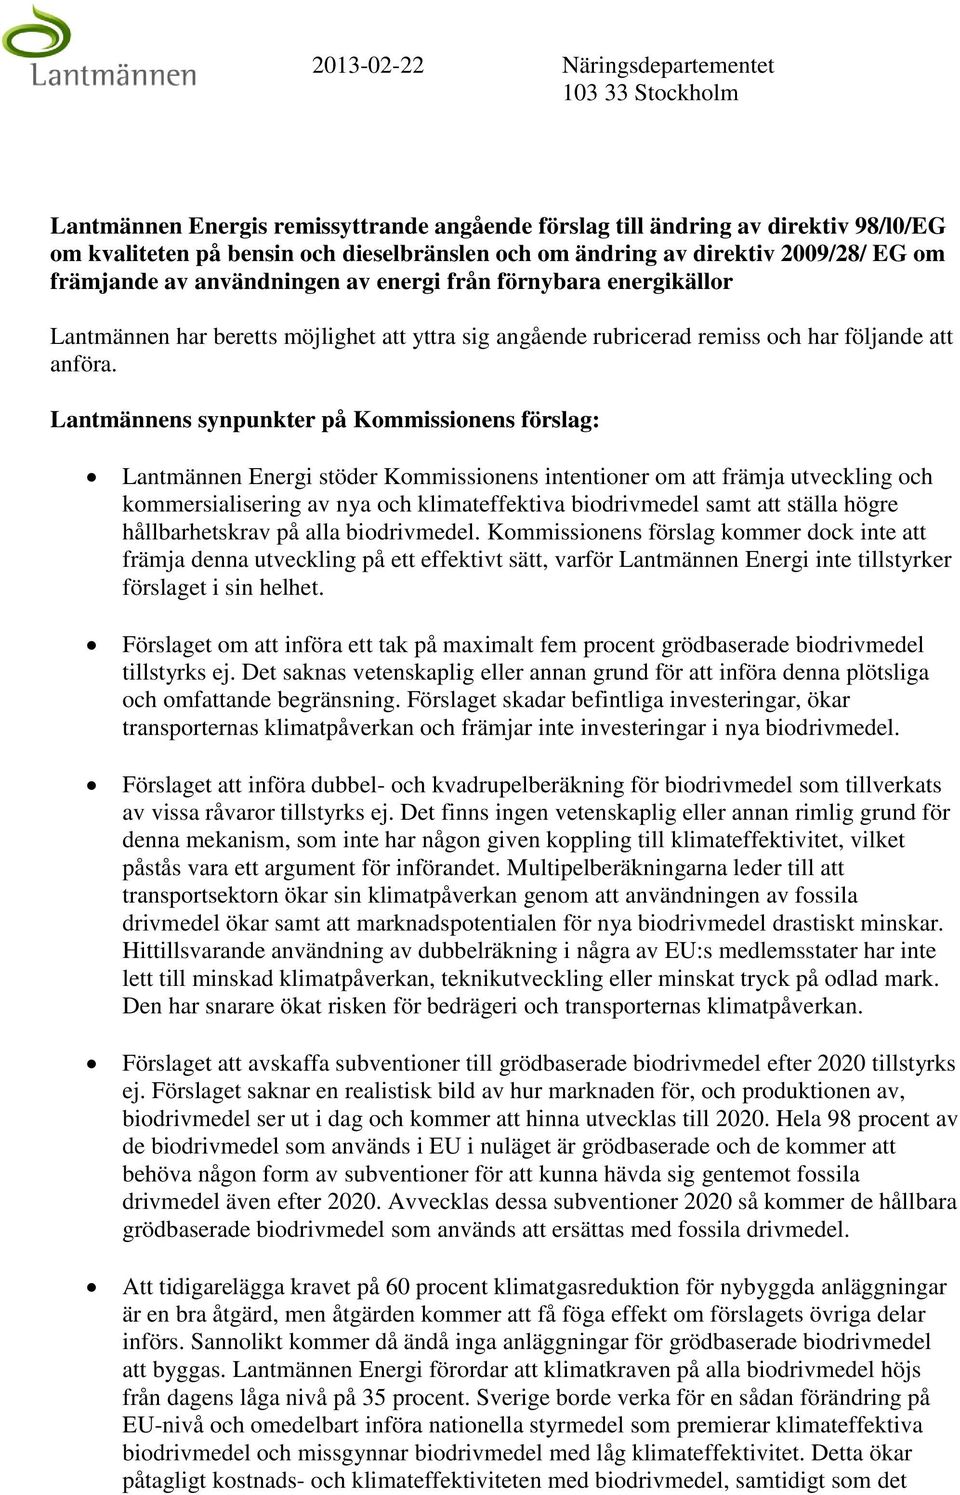 Lantmännens synpunkter på Kommissionens förslag: Lantmännen Energi stöder Kommissionens intentioner om att främja utveckling och kommersialisering av nya och klimateffektiva biodrivmedel samt att